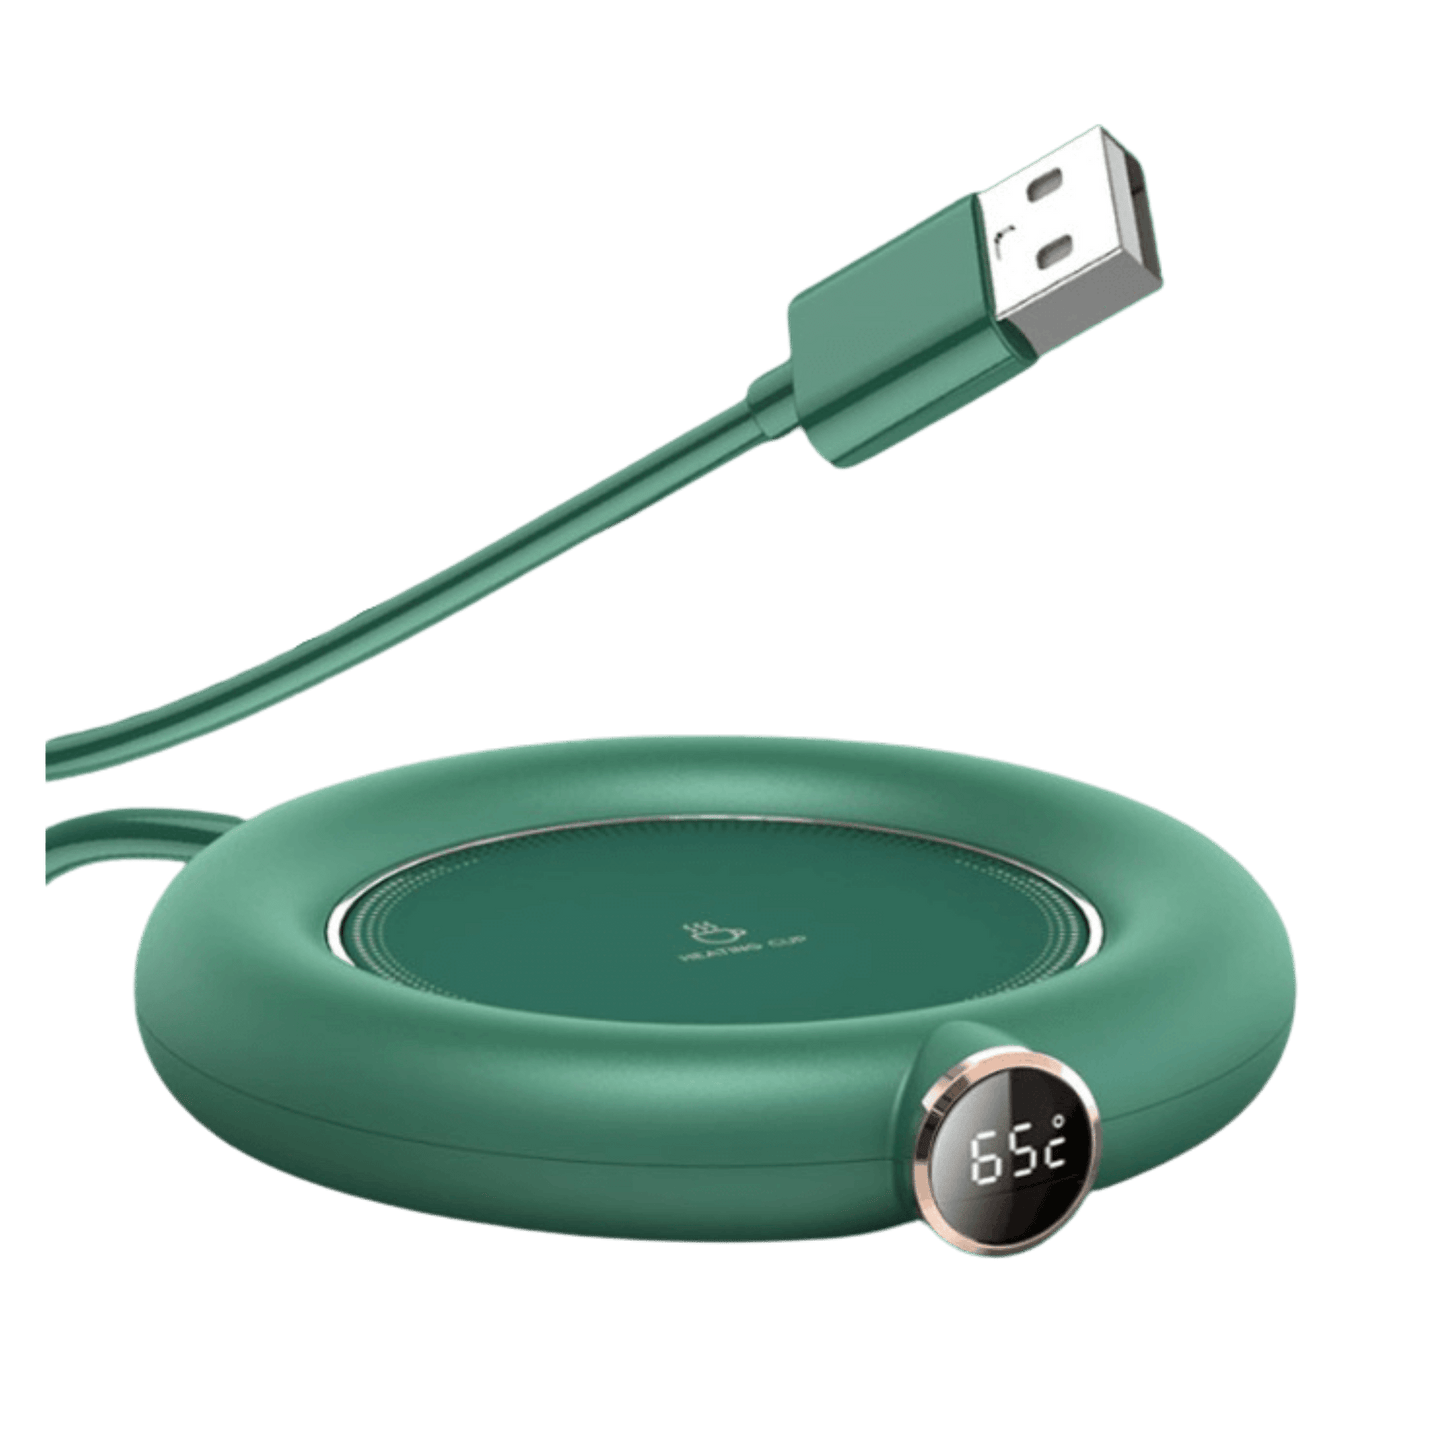 Donut Mug Warmer USB Coaster Office Desk Decor – Little Tigress LLC